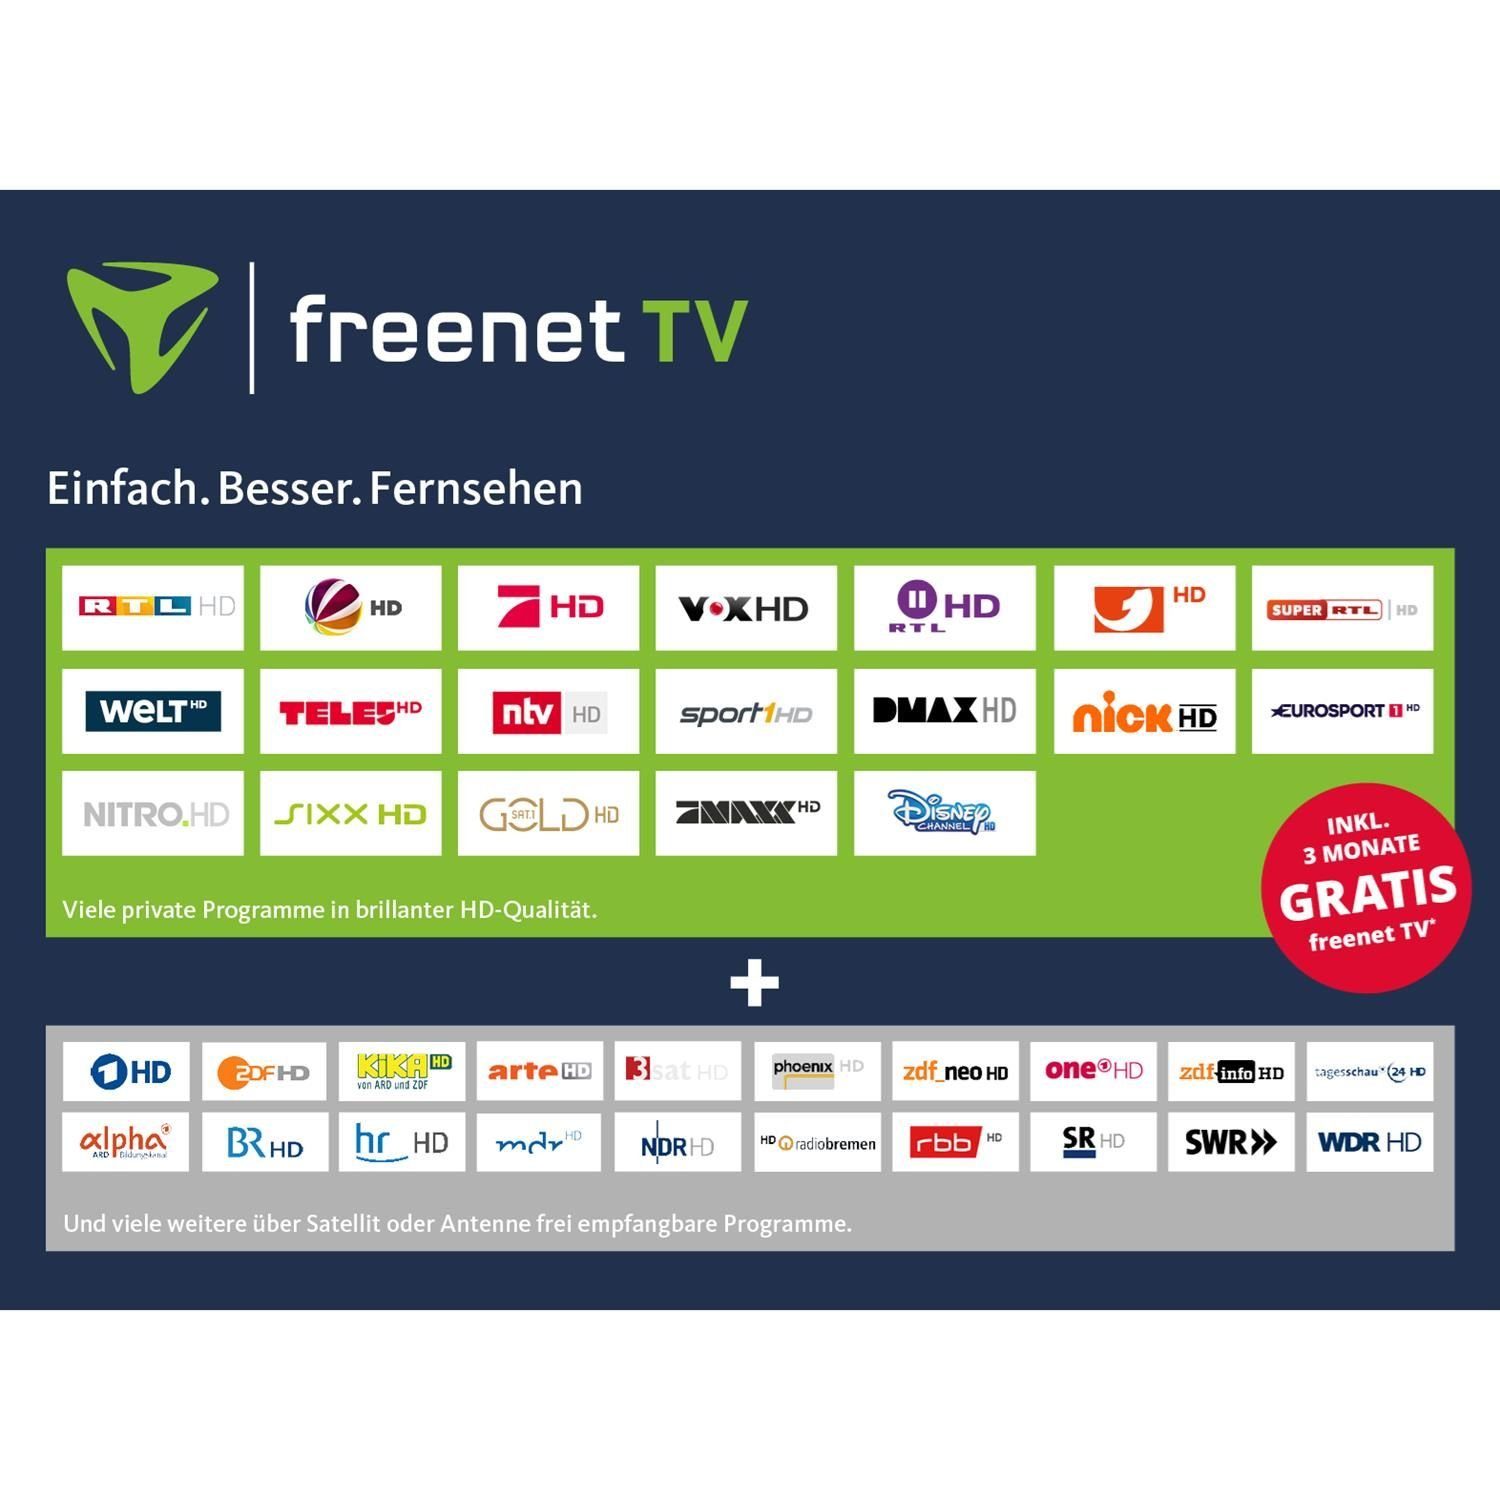 TT Kabel-Receiver DVB-T2 HDTV-Receiver TELESTAR DVB-C und IR 5 digiHD